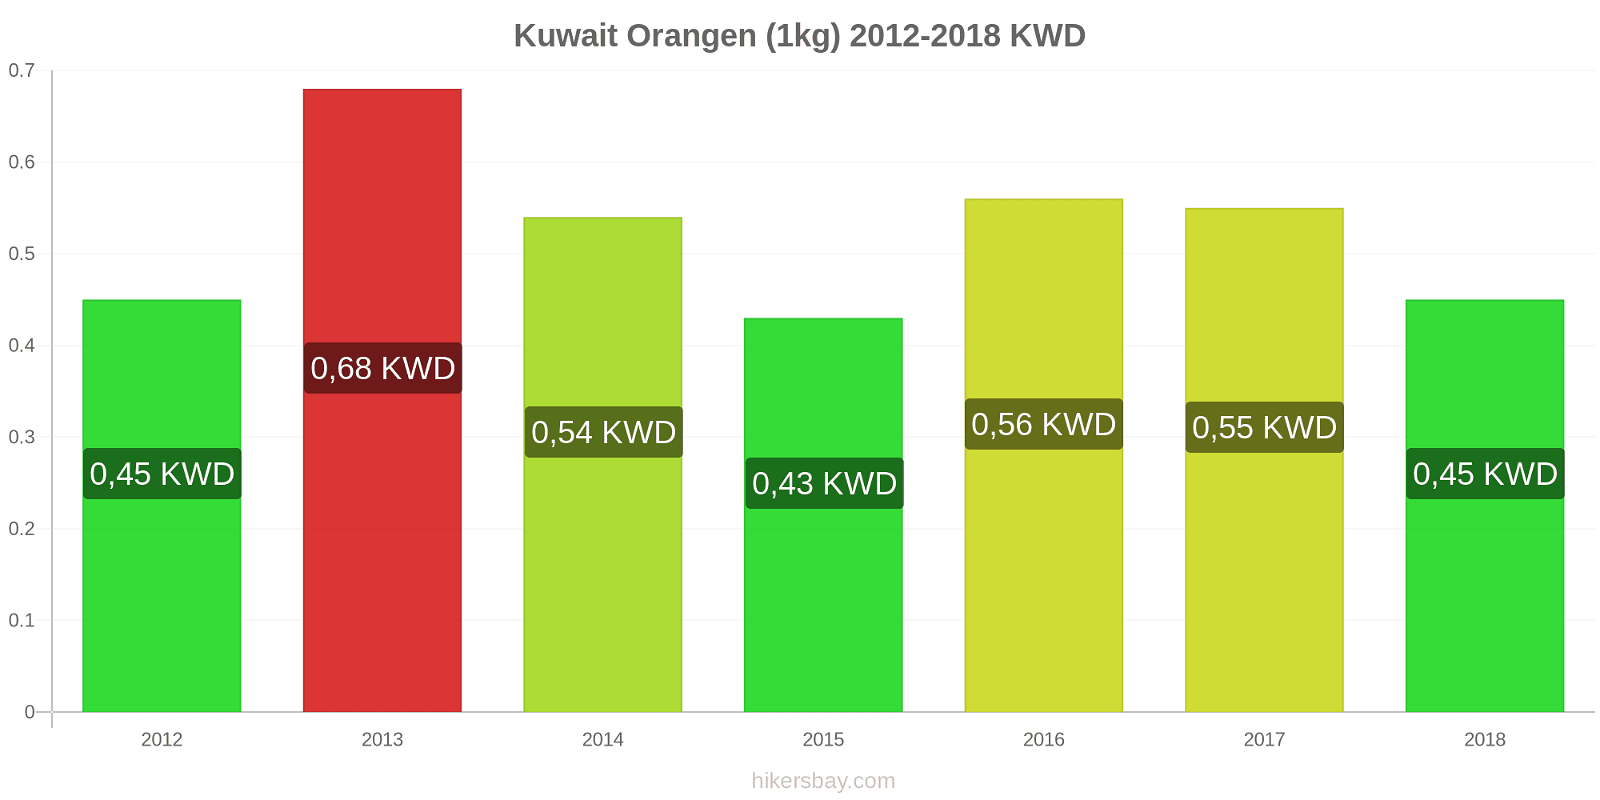 Kuwait Preisänderungen Orangen (1kg) hikersbay.com